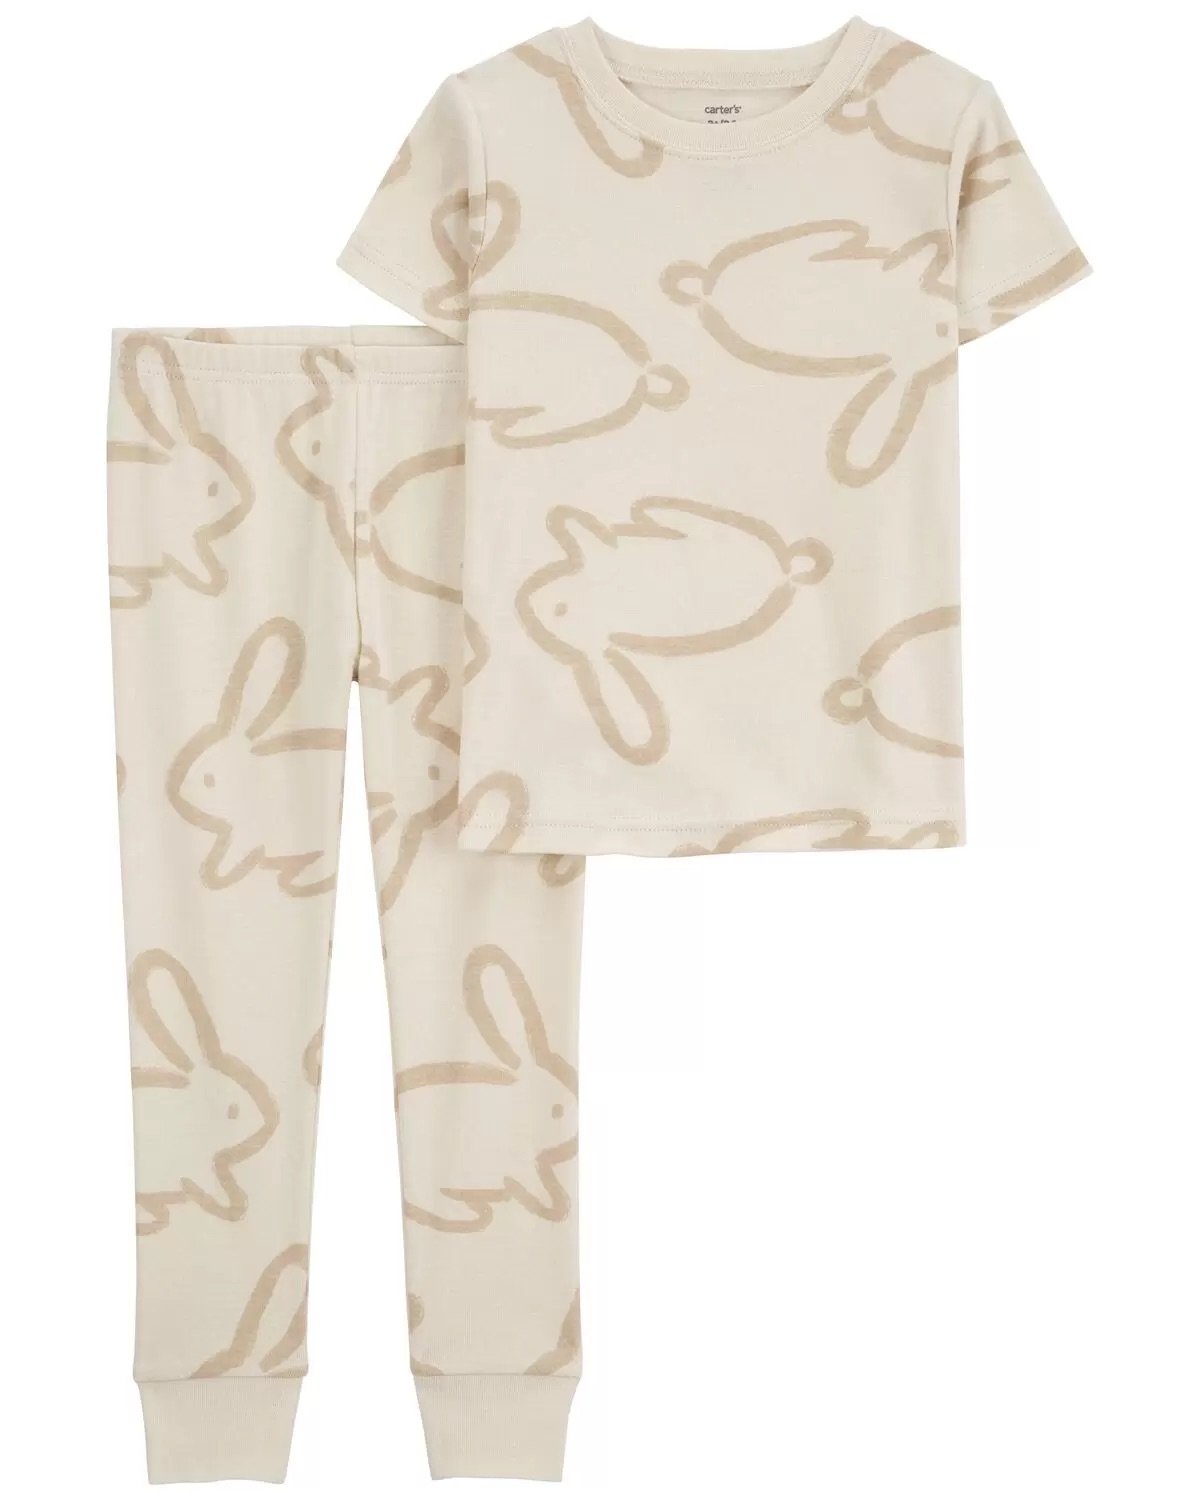 Toddler 2-Piece Bunny Snug Fit Cotton Pajamas Khaki.jpeg